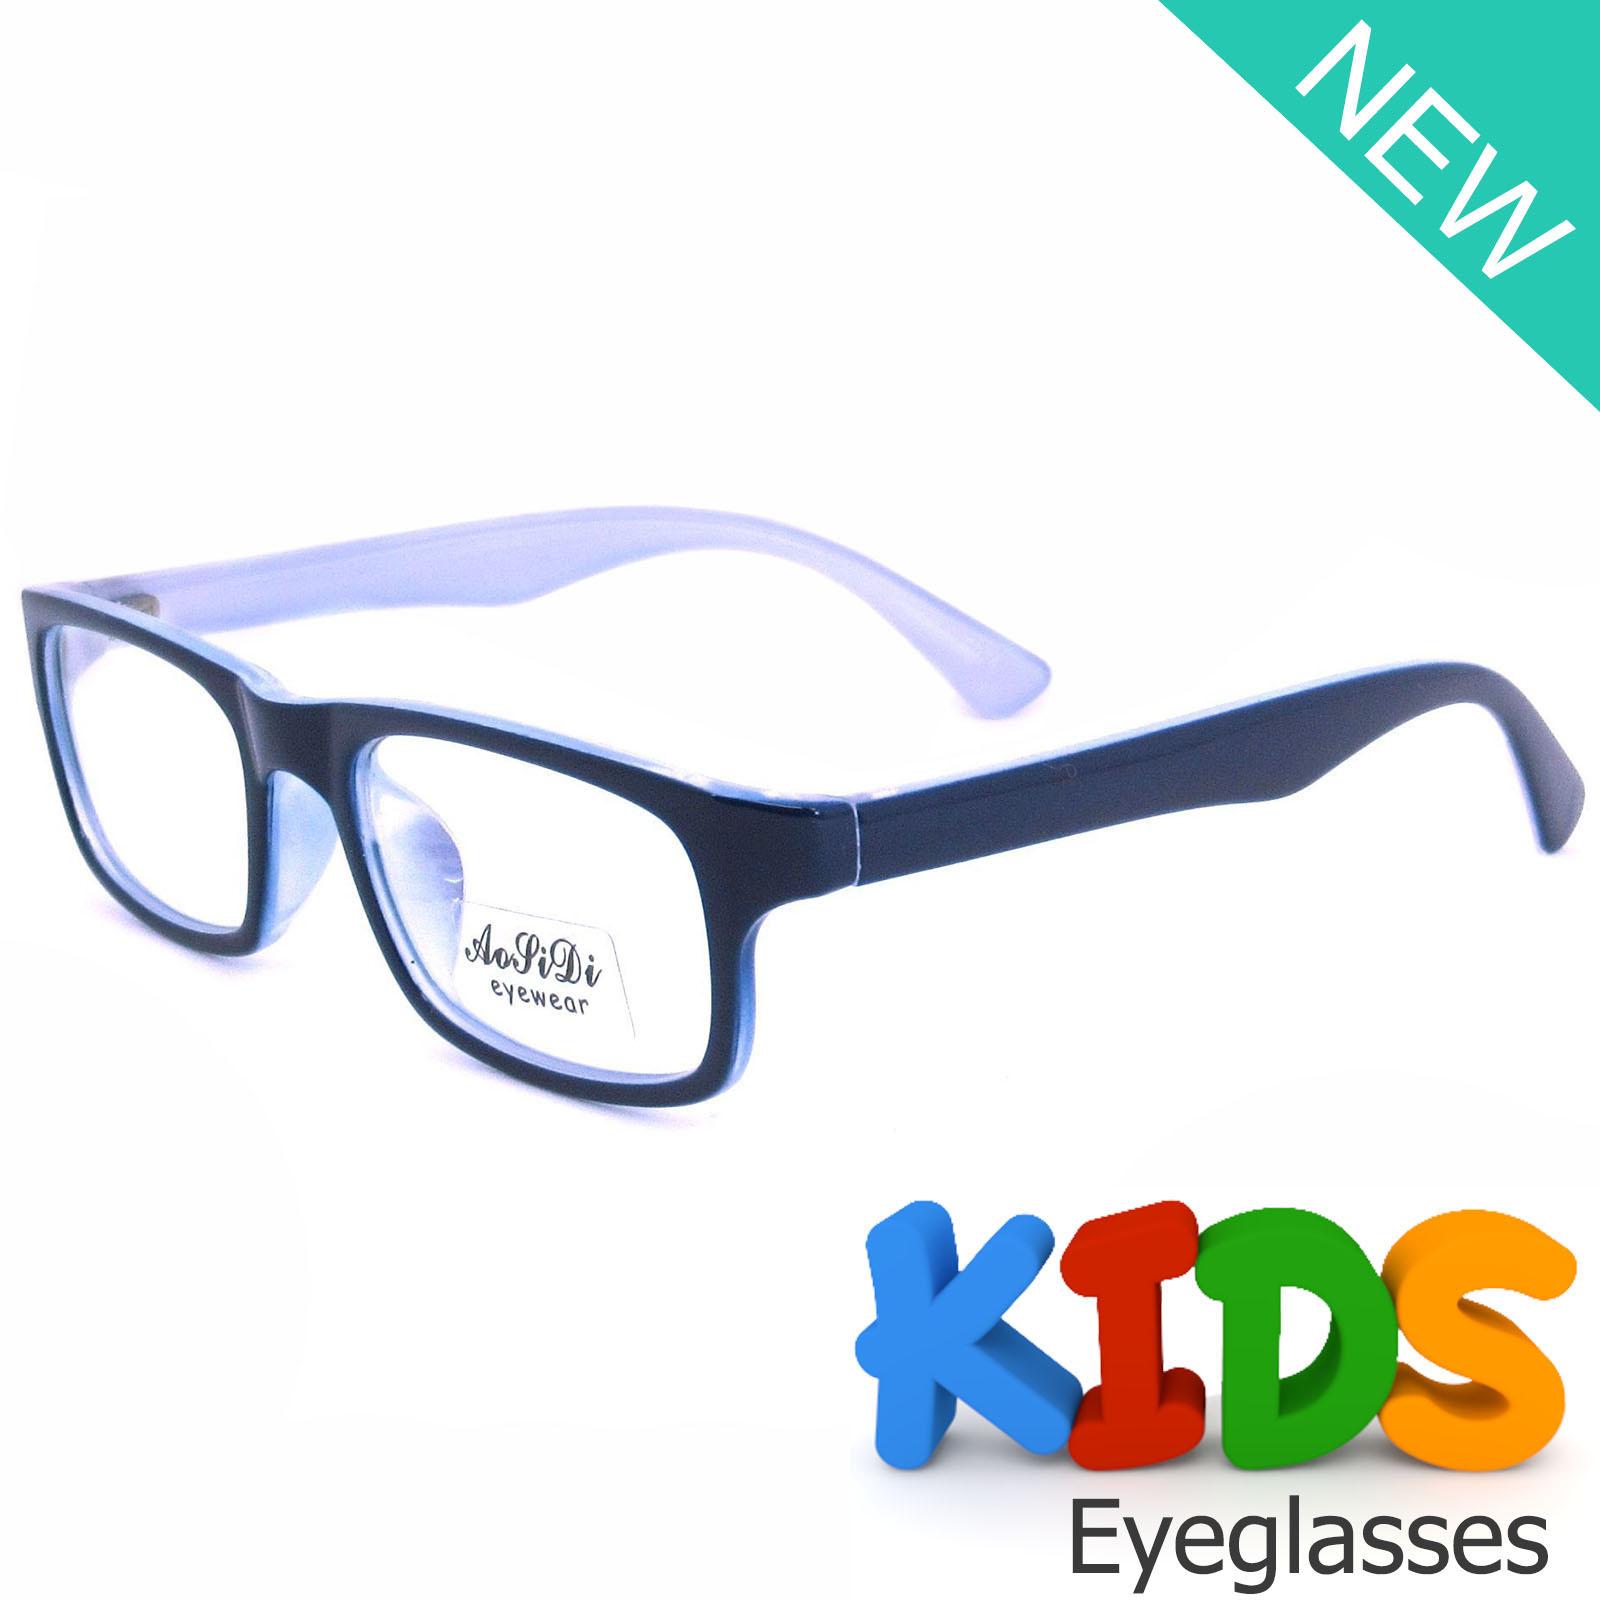 แว่นตาเกาหลีเด็ก Fashion Korea Children แว่นตาเด็ก รุ่น 1610 C-24 สีน้ำเงิน กรอบแว่นตาเด็ก Square ทรงสี่เหลี่ยม Eyeglass baby frame ( สำหรับตัดเลนส์ ) วัสดุ PC เบา ขาข้อต่อ Kid leg joints Plastic Grade A material Eyewear Top Glasses